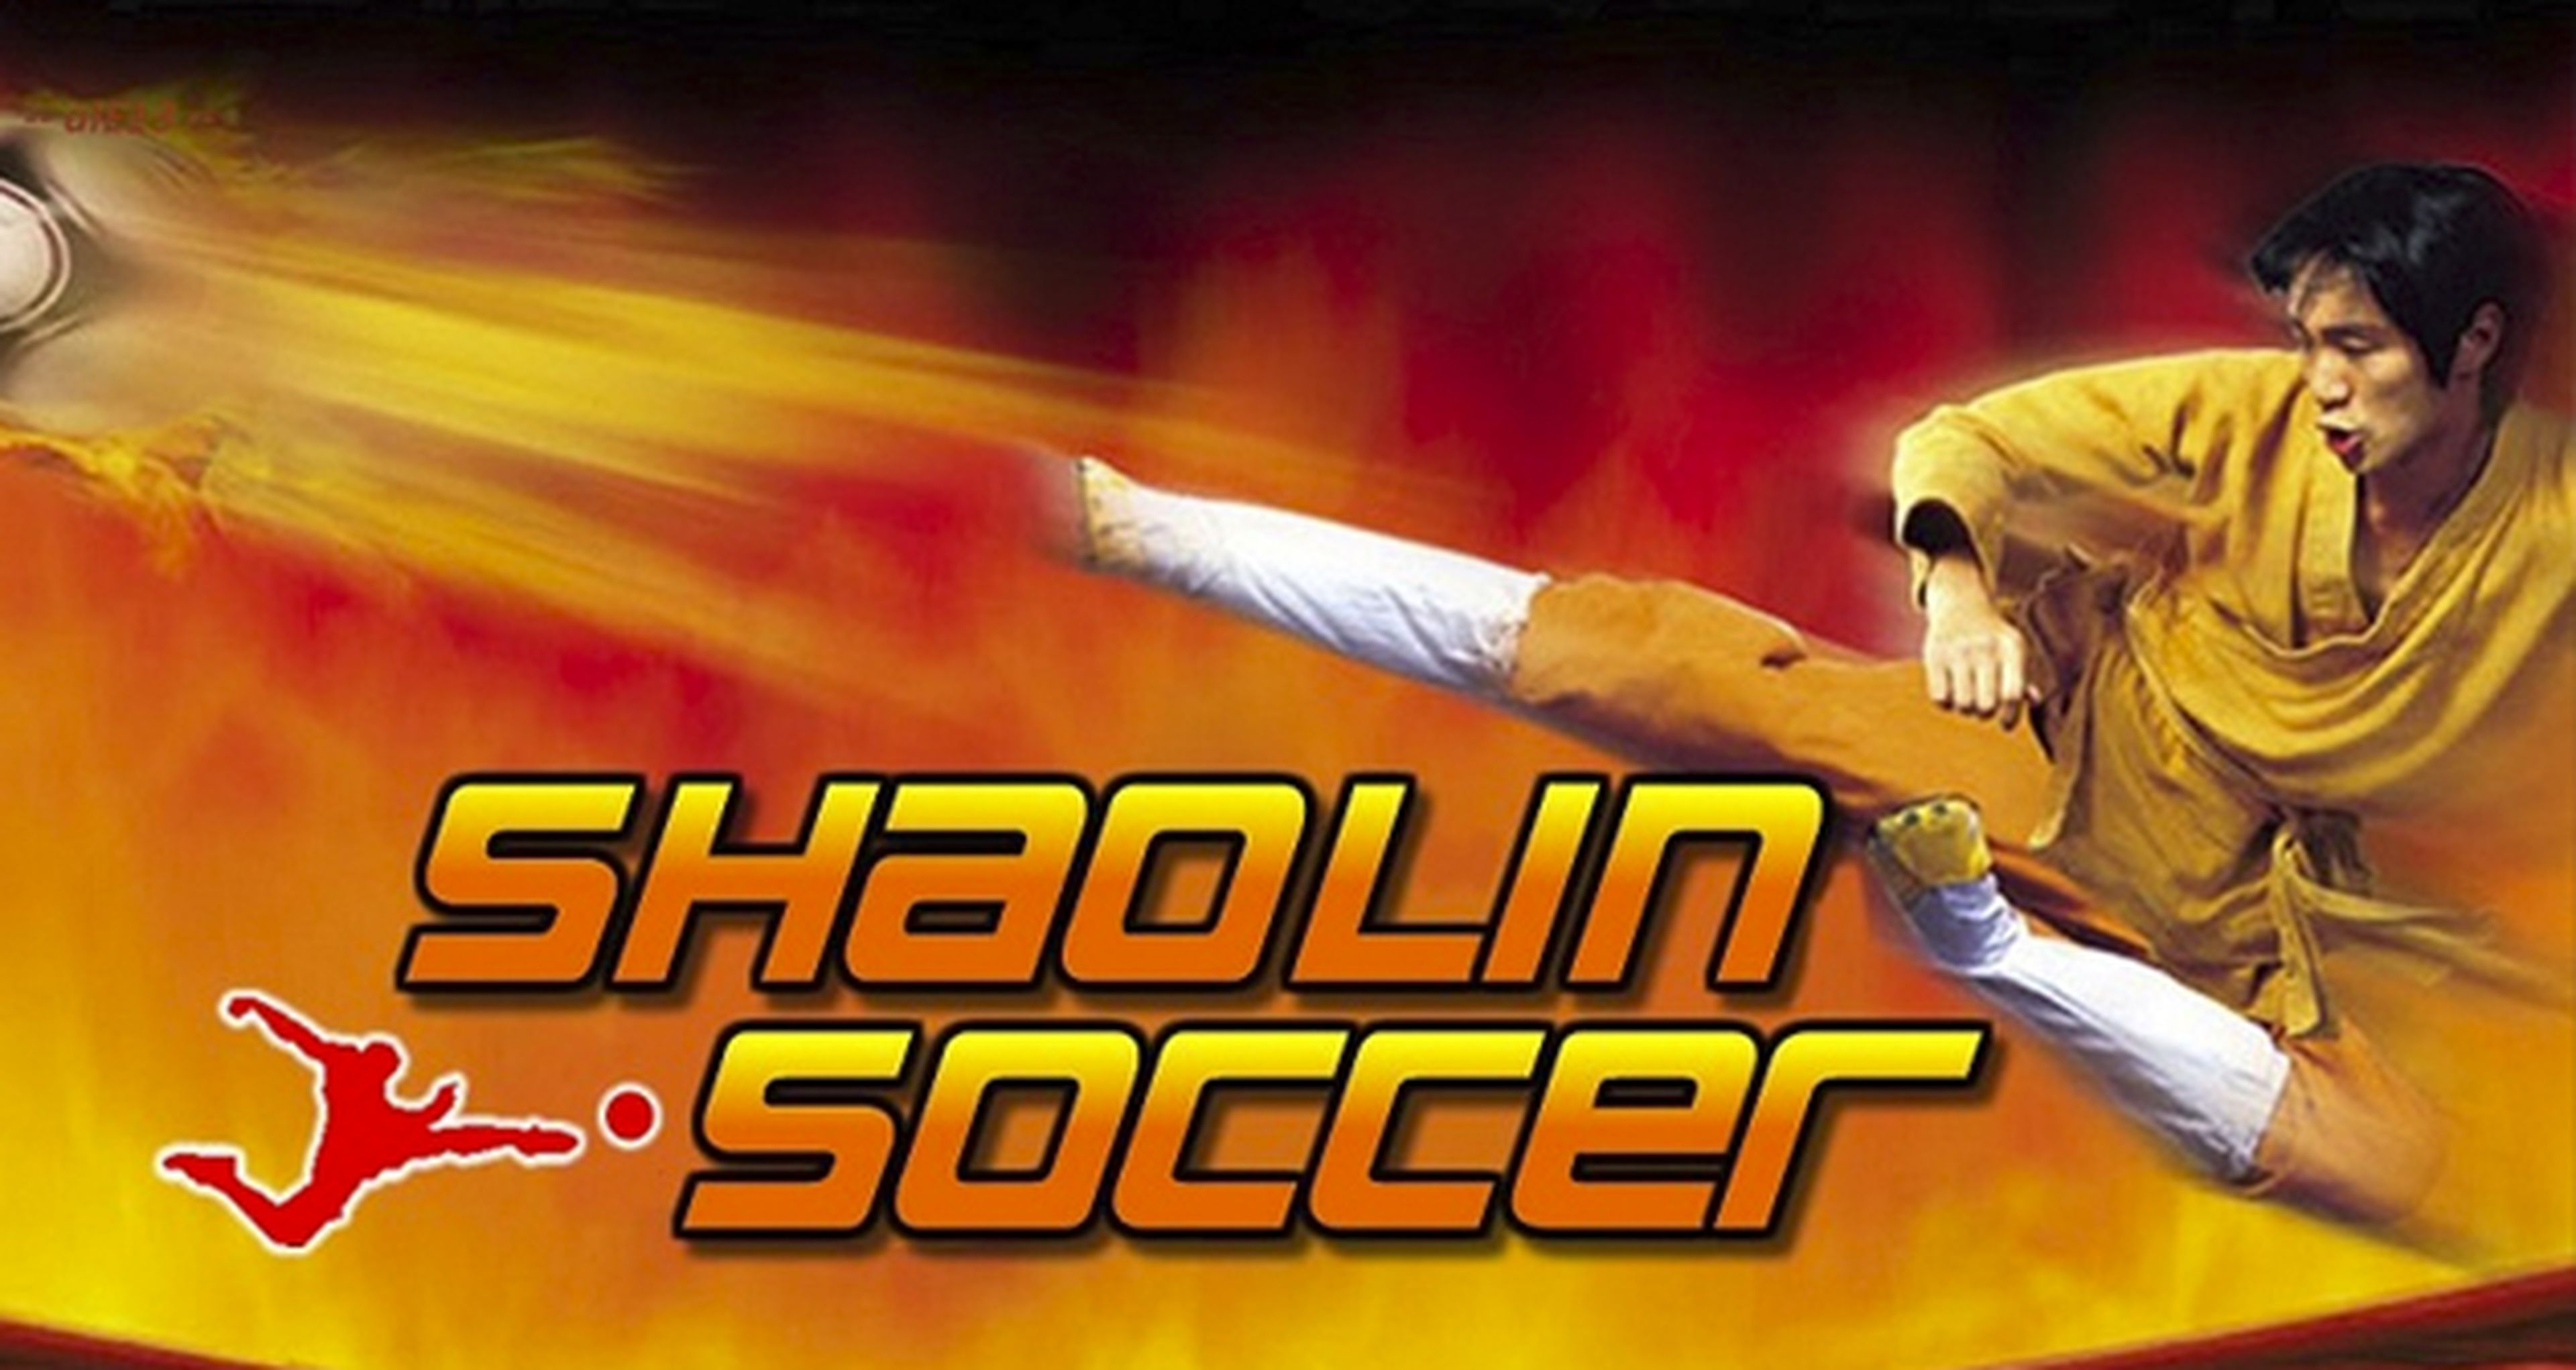 La frikipeli: Shaolin Soccer, estrenos, polémica y concurso